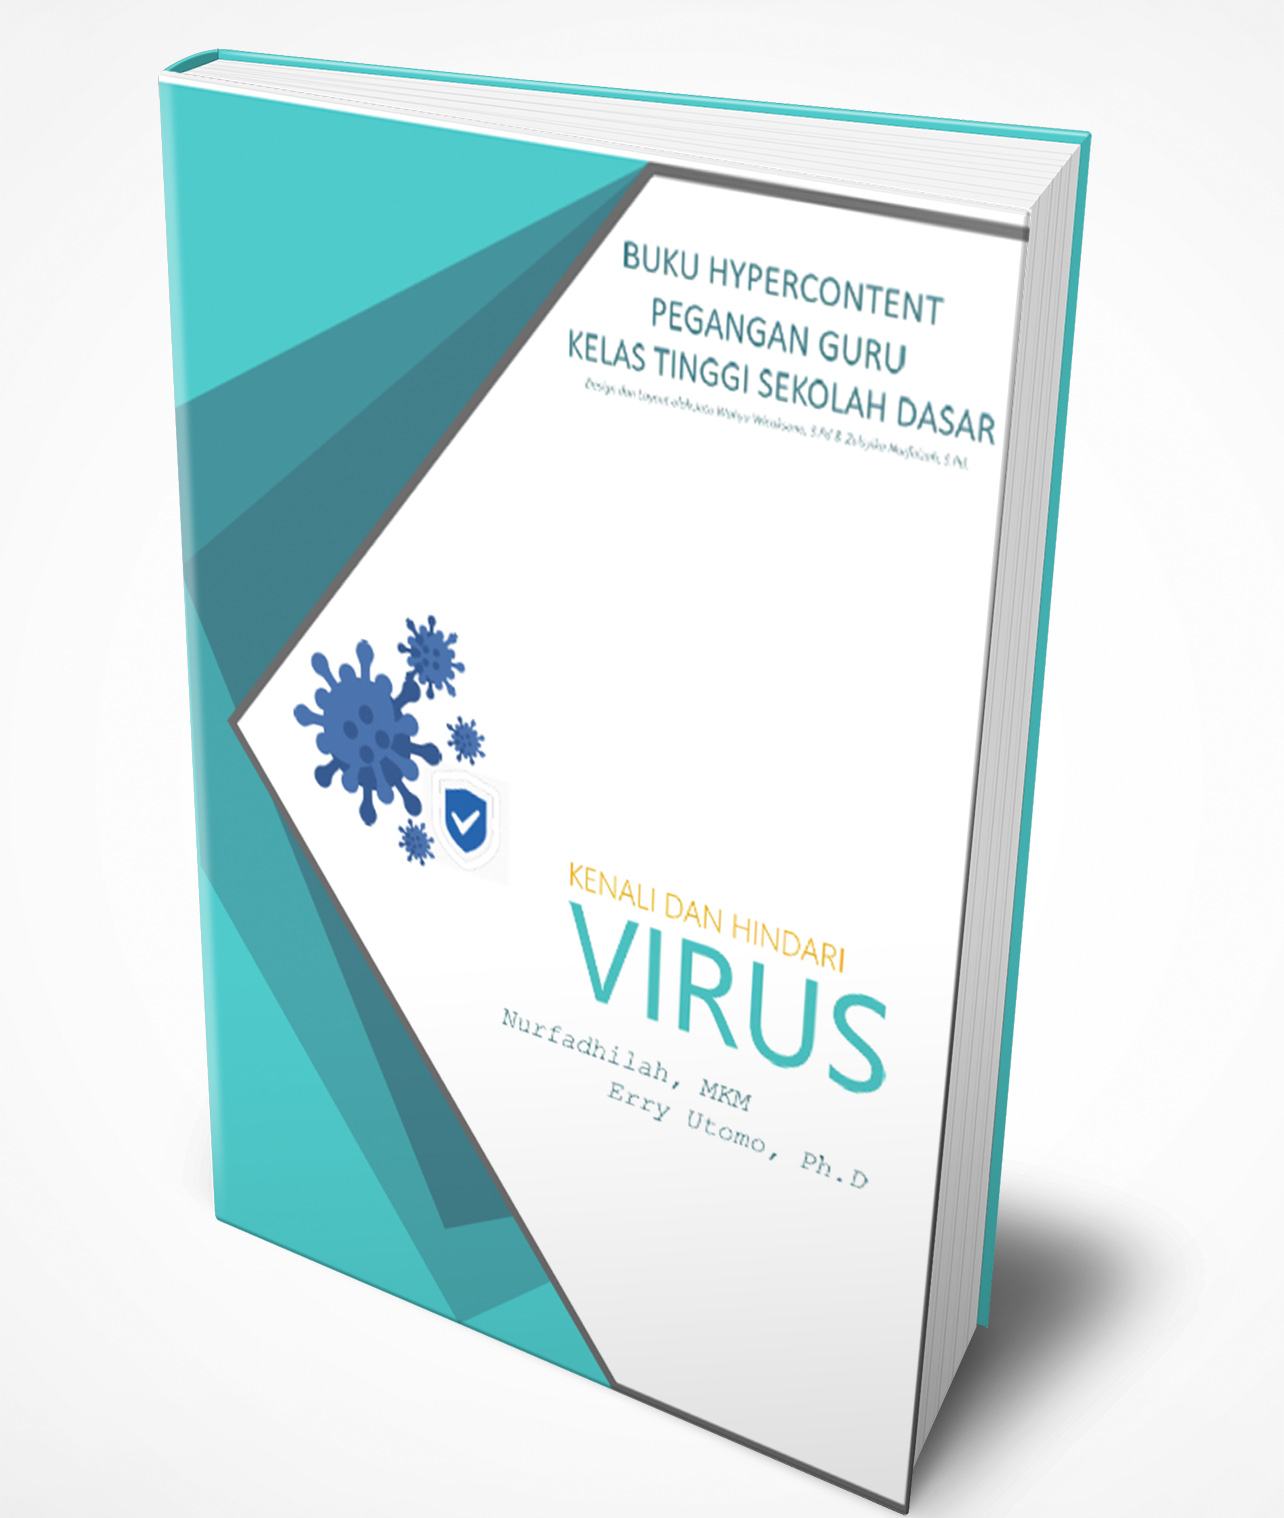 Telah Hadir Buku Hypercontent “Kenali dan Hindari Virus”…